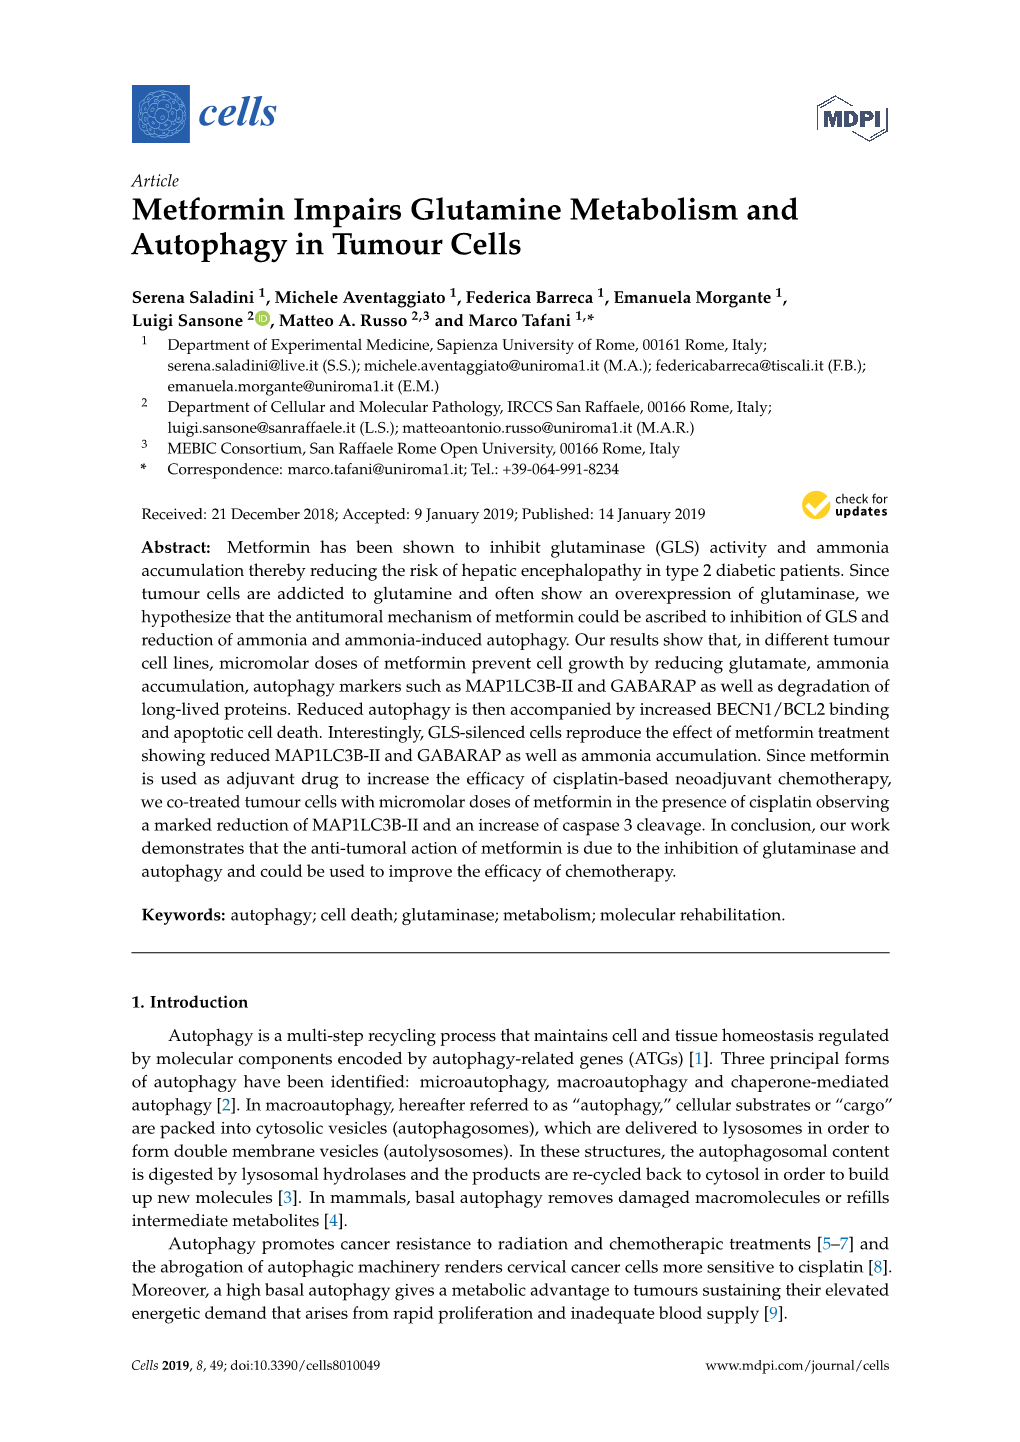 Metformin Impairs Glutamine Metabolism and Autophagy in Tumour Cells